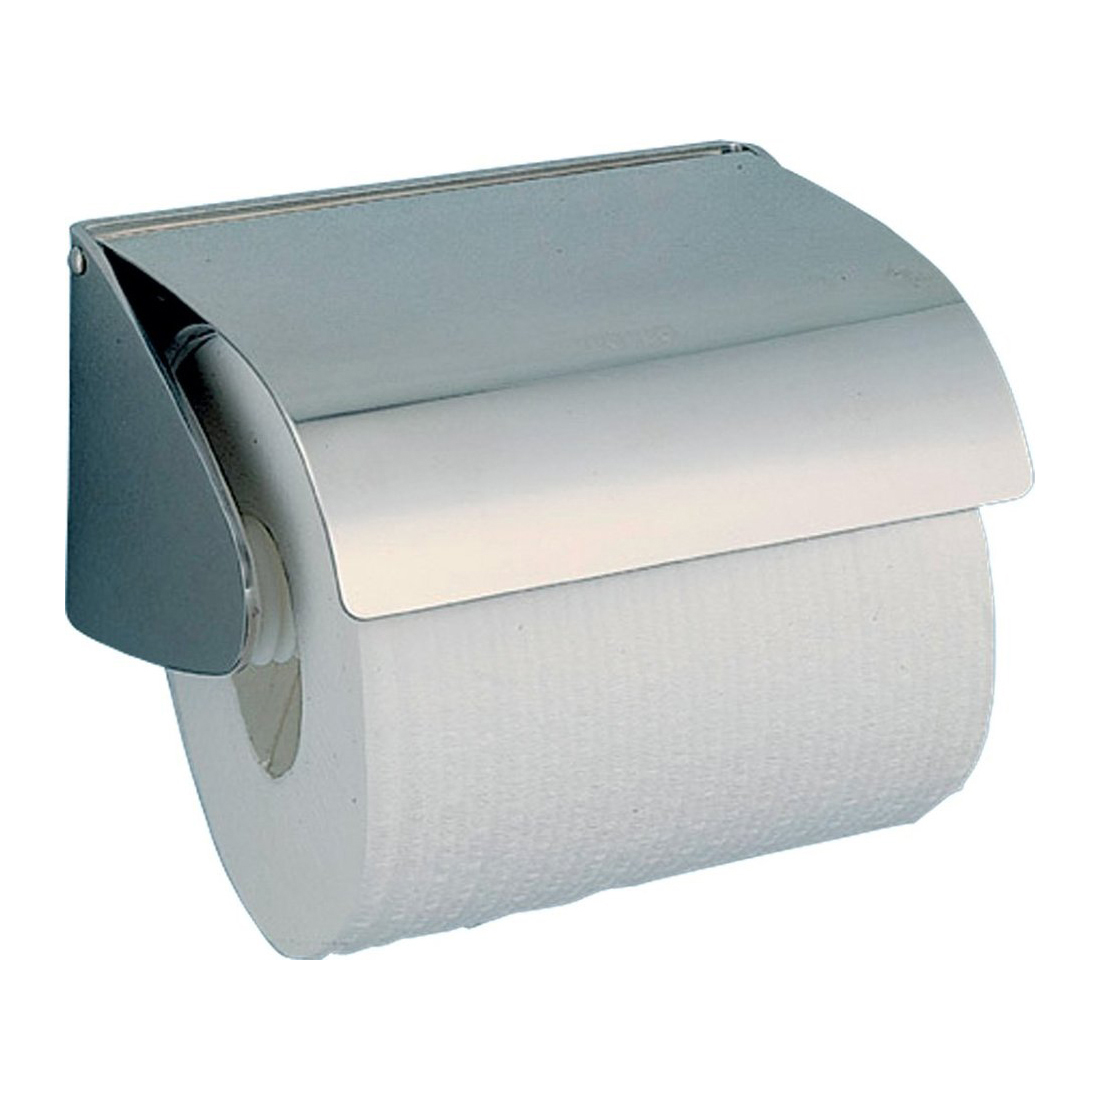 Держатель для туалетной бумаги Nofer Classic 05013.S держатель для туалетной бумаги nofer industrial 05012